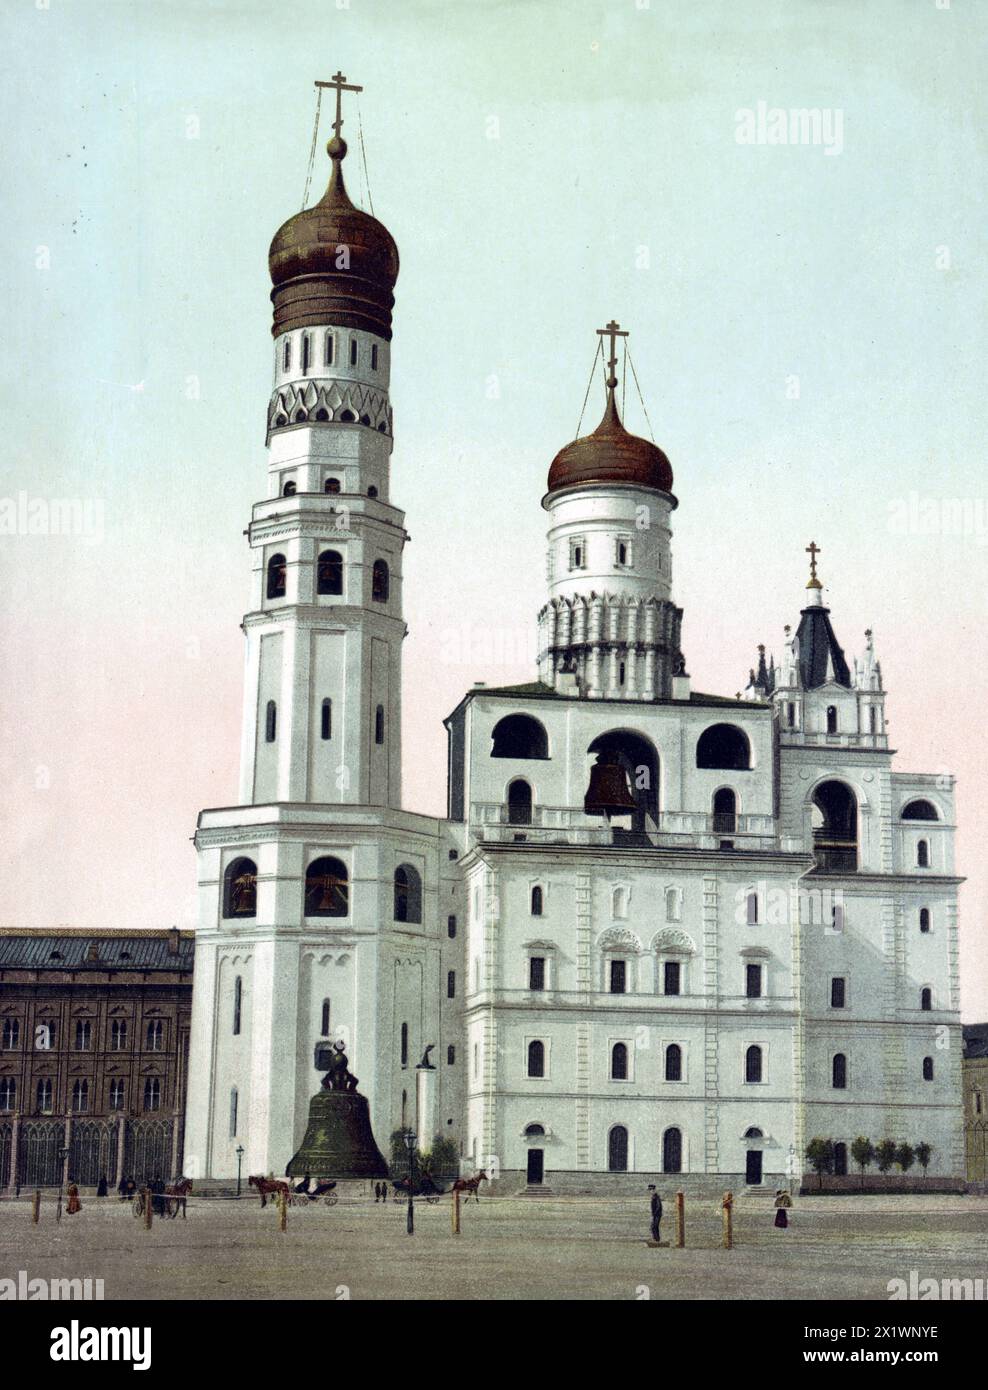 Glockenturm Iwan der Große, Moskau, Russland, um 1890, Historisch, Digital restaurierte Reproduktion von einer Vorlage aus dem 19. Jahrhundert Foto Stock